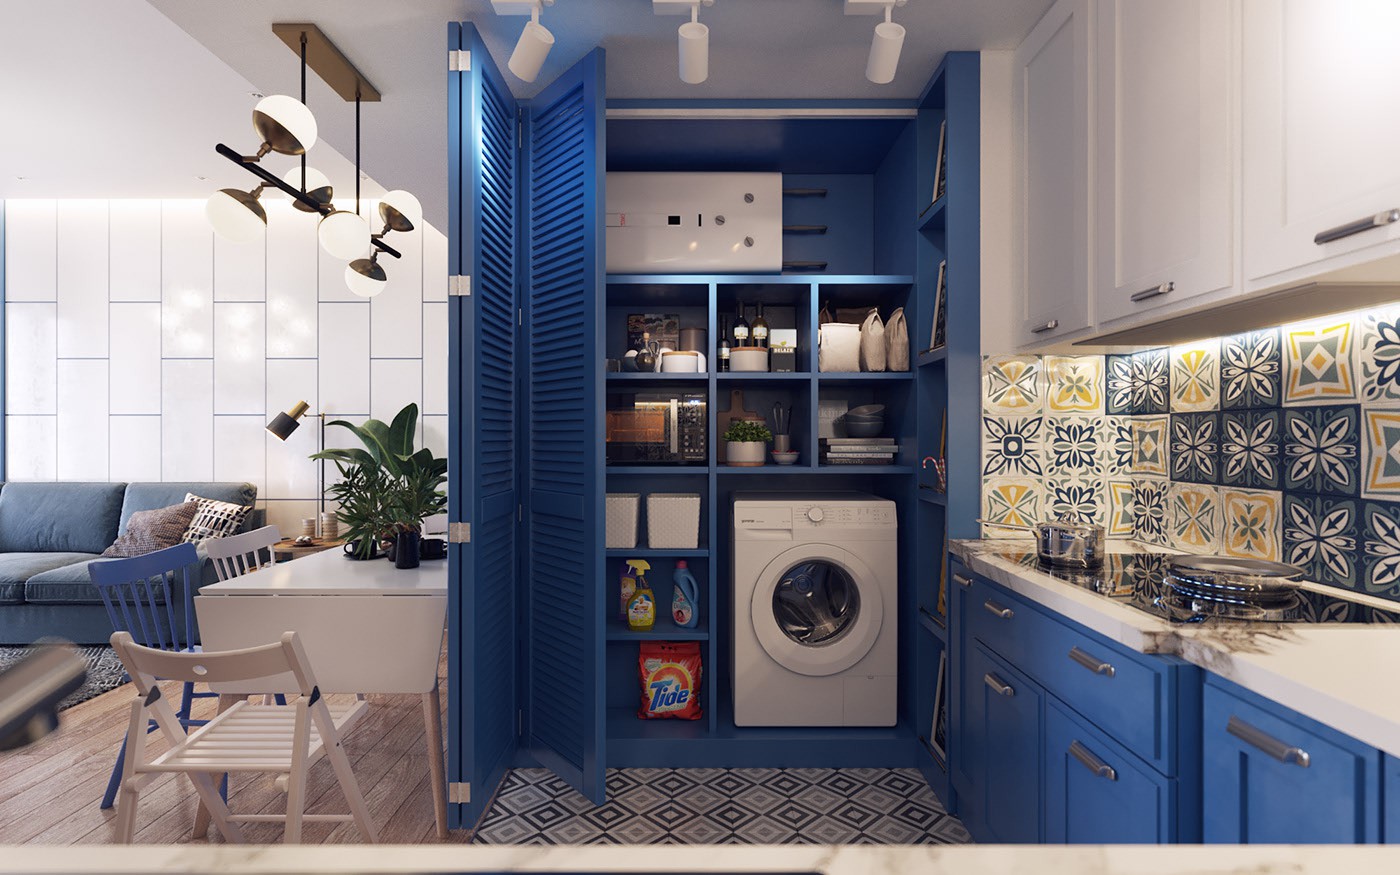 Hình ảnh cận cảnh tủ bếp âm tường màu xanh dương là nơi giấu gọn thiết bị nấu nướng và máy giặt, bên cạnh là bếp nấu, bên còn lại giáp bàn ăn, phòng khách.